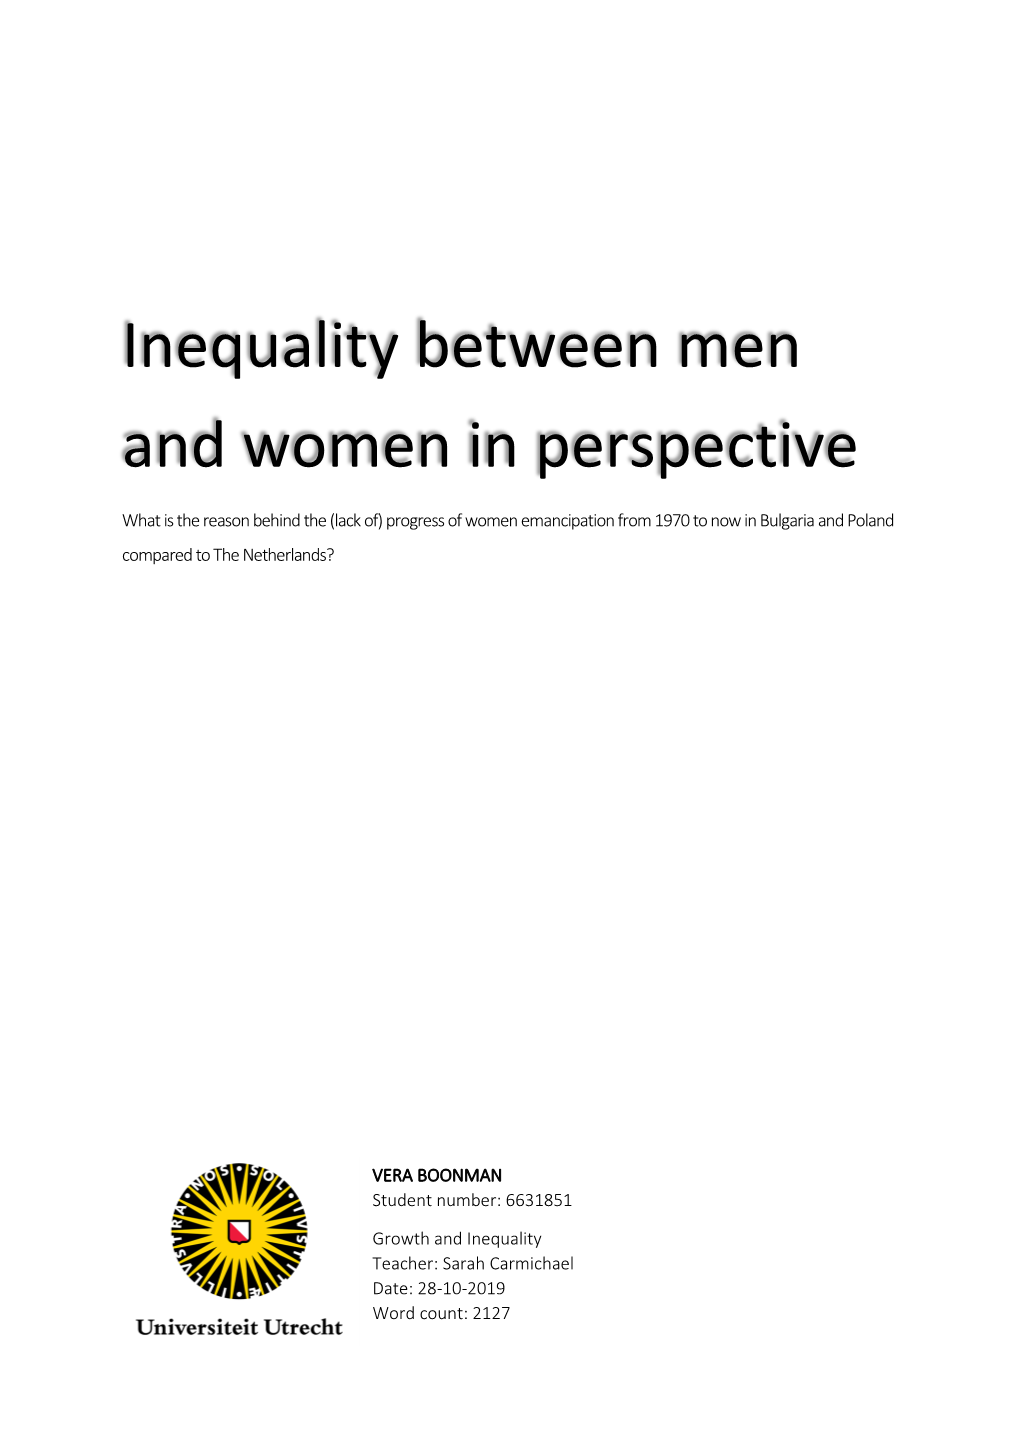 Inequality Between Men and Women in Perspective